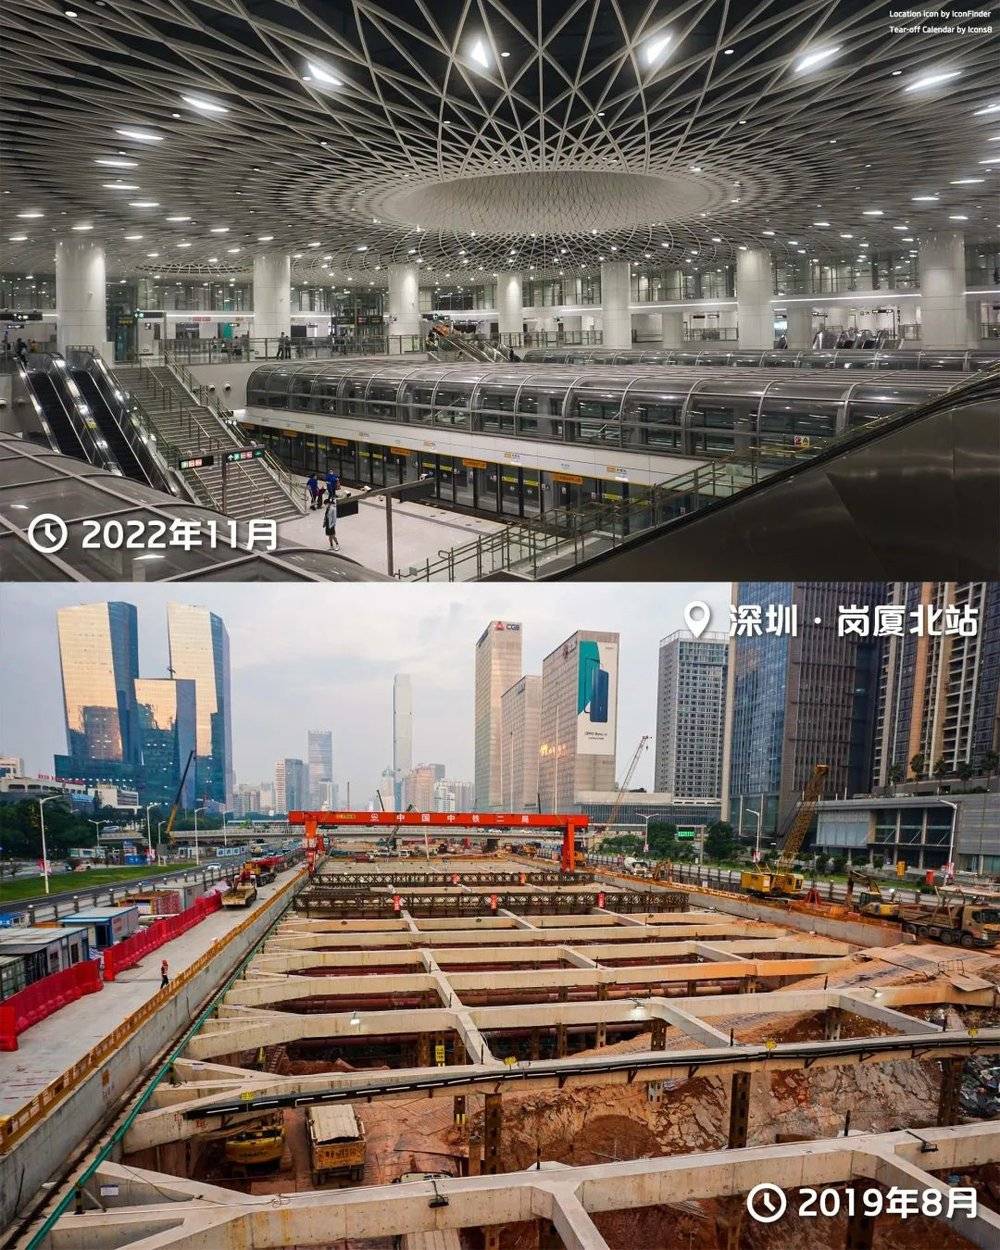 深圳地铁岗厦北站：巨大的开挖规模造就了网红景点“深圳之眼”，但此外枢纽各处细节，尤其地面道路，设计和施工质量一般。